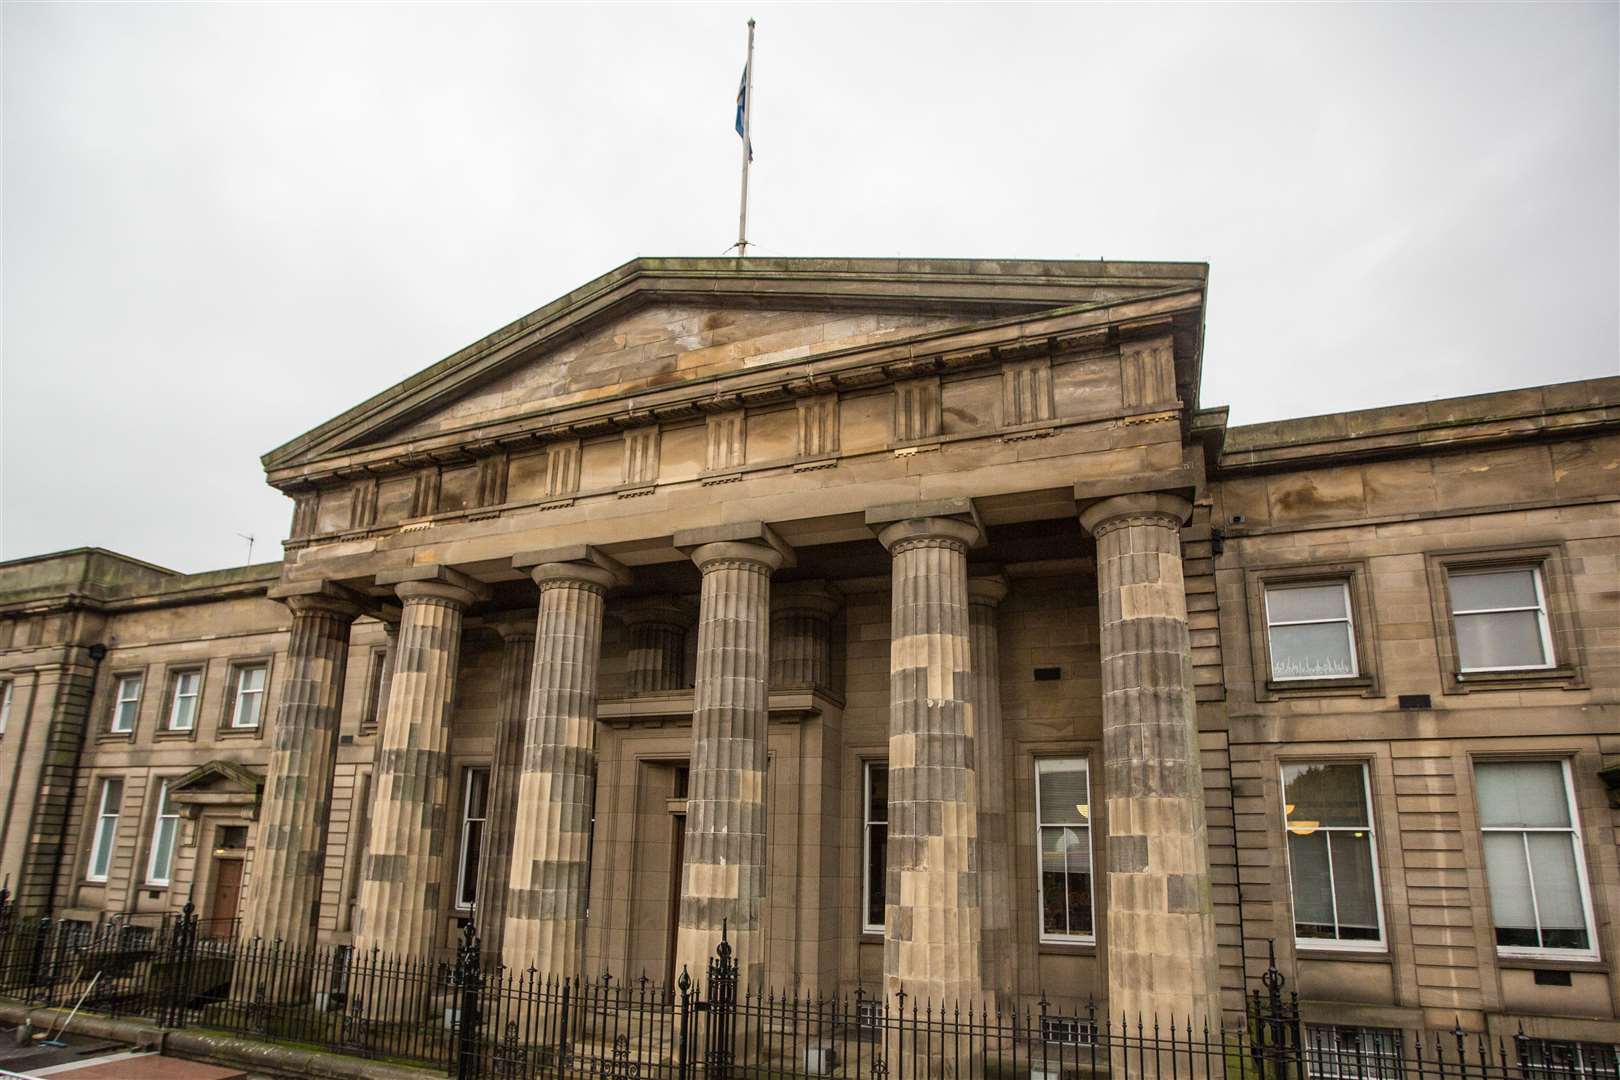 High Court on Saltmarket, Glasgow.